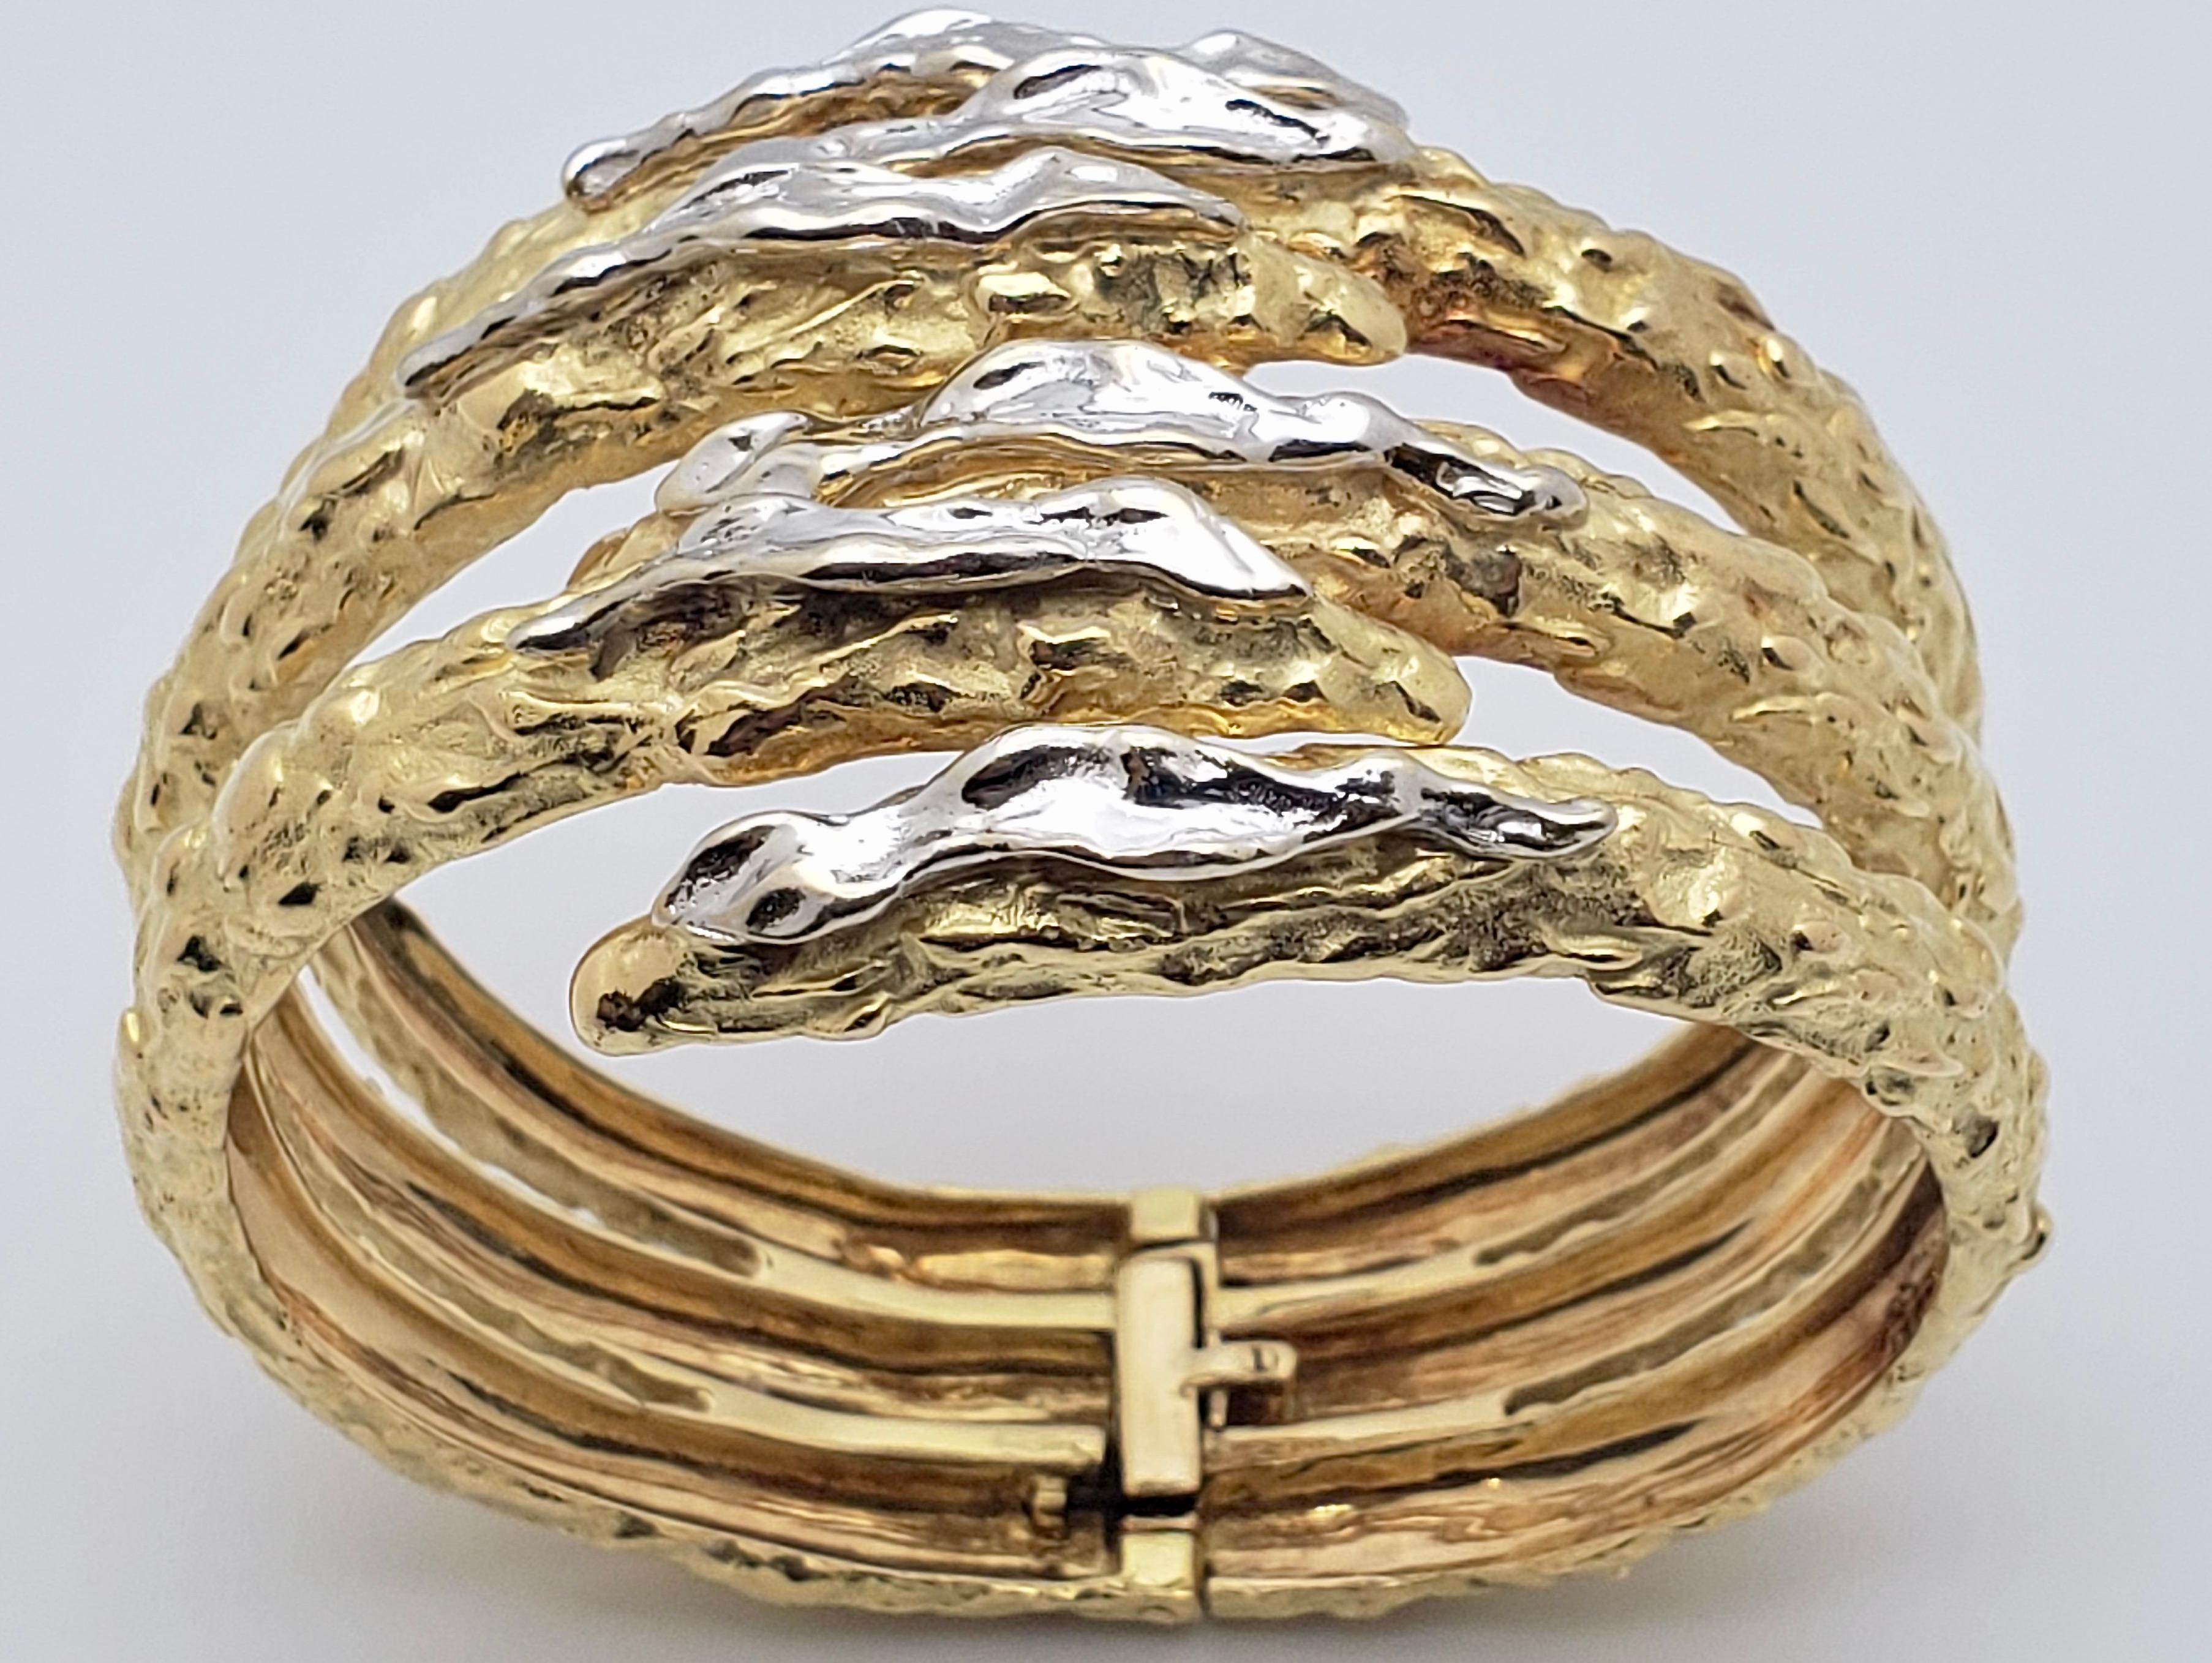 Extraordinaire bracelet serpent à griffes en or jaune et blanc 18K. Circa 1960, il présente une finition en or martelé unique en son genre, les traits d'or blanc sur le devant des griffes créant un contraste vibrant. Ce magnifique bracelet a été